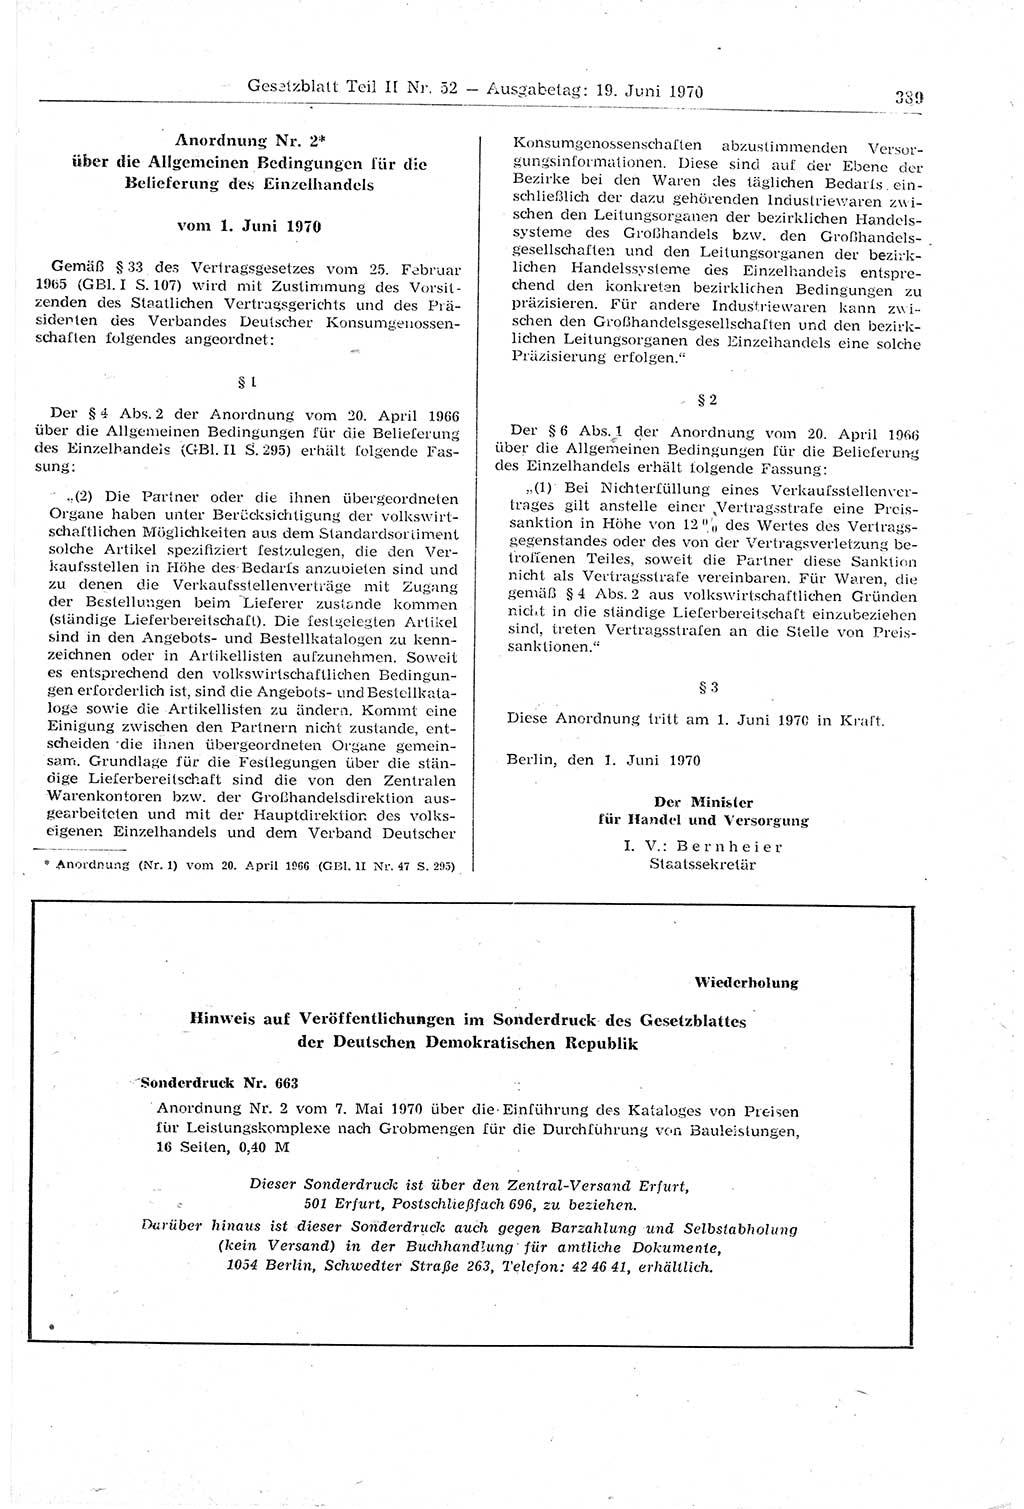 Gesetzblatt (GBl.) der Deutschen Demokratischen Republik (DDR) Teil ⅠⅠ 1970, Seite 389 (GBl. DDR ⅠⅠ 1970, S. 389)